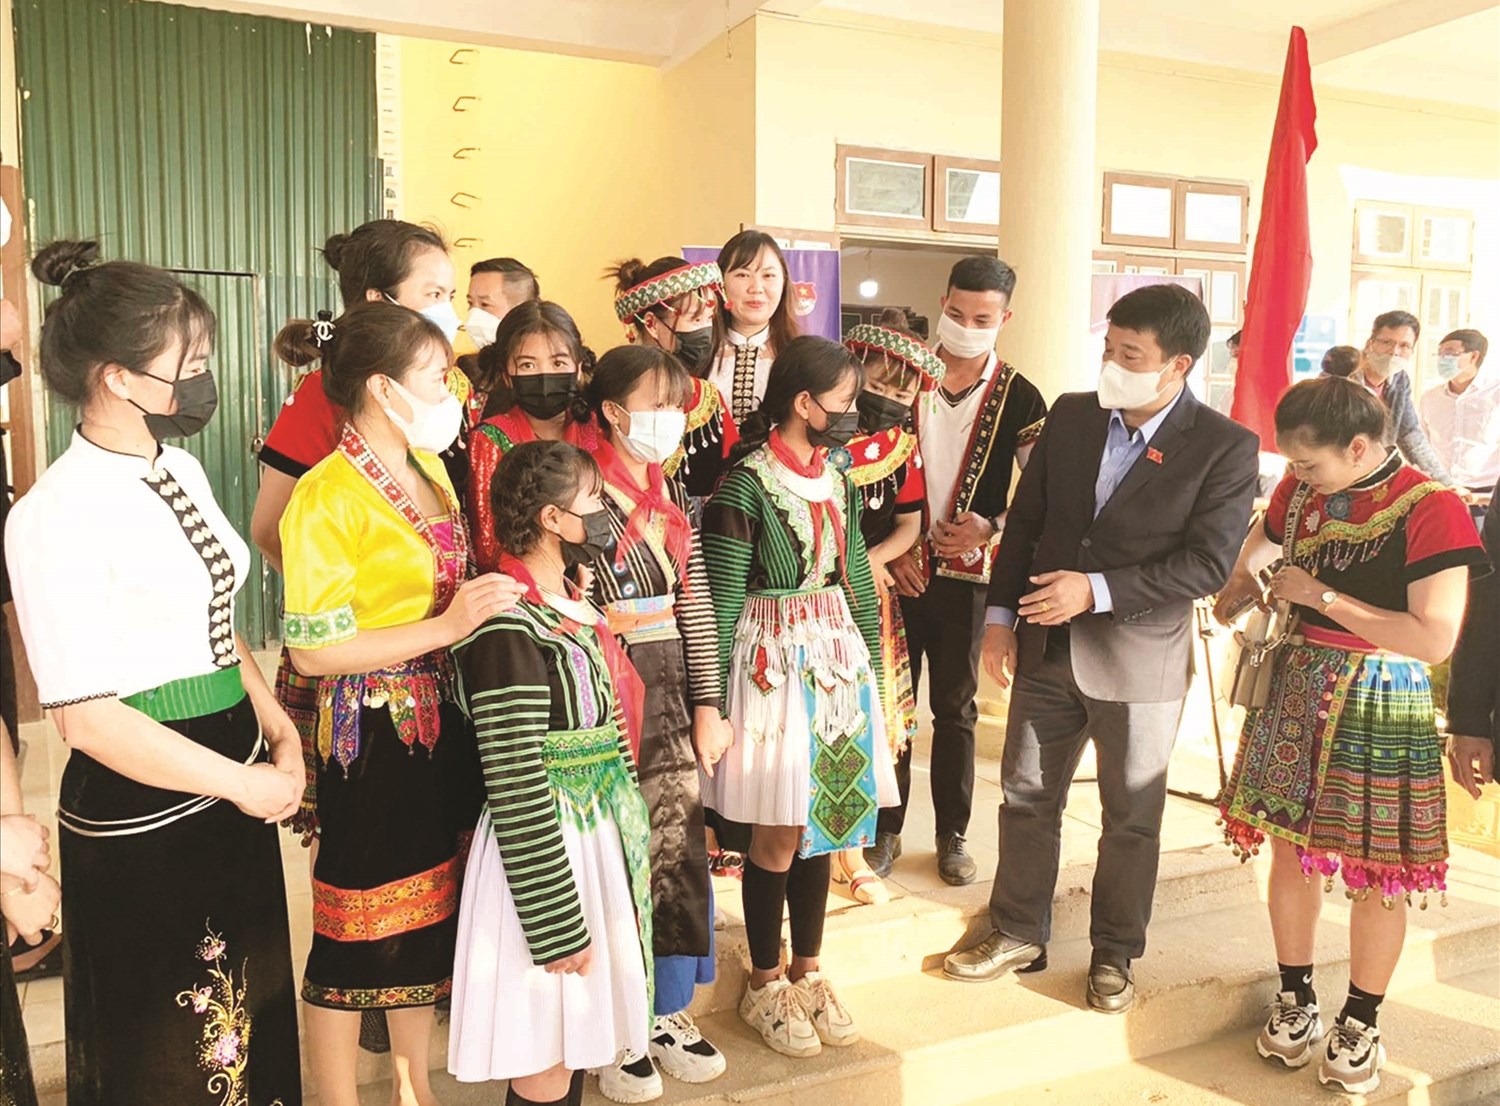 Chủ tịch Hội đồng Dân tộc Quốc hội Y Thanh Hà Niê Kđăm thăm hỏi, động viên, tặng quà các em học sinh Trường PTDTBT THCS xã Chiềng Công, huyện Mường La, tỉnh Sơn La nhân dịp Năm mới 2022 (tháng 1/2022).